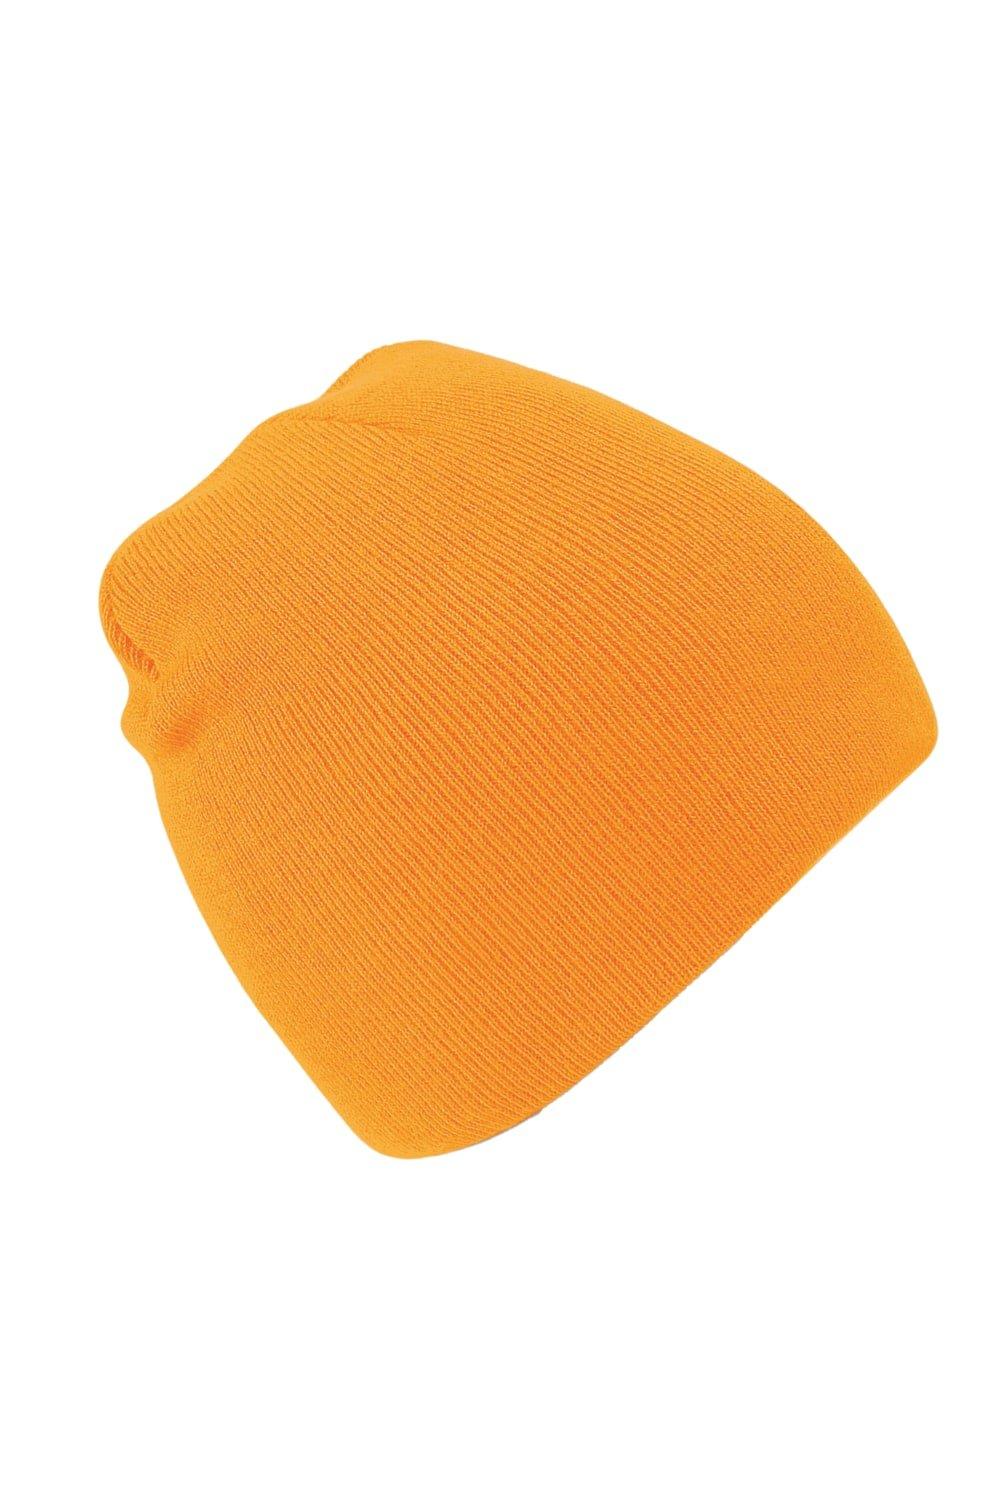 Простая базовая вязаная зимняя шапка-бини Beechfield, оранжевый